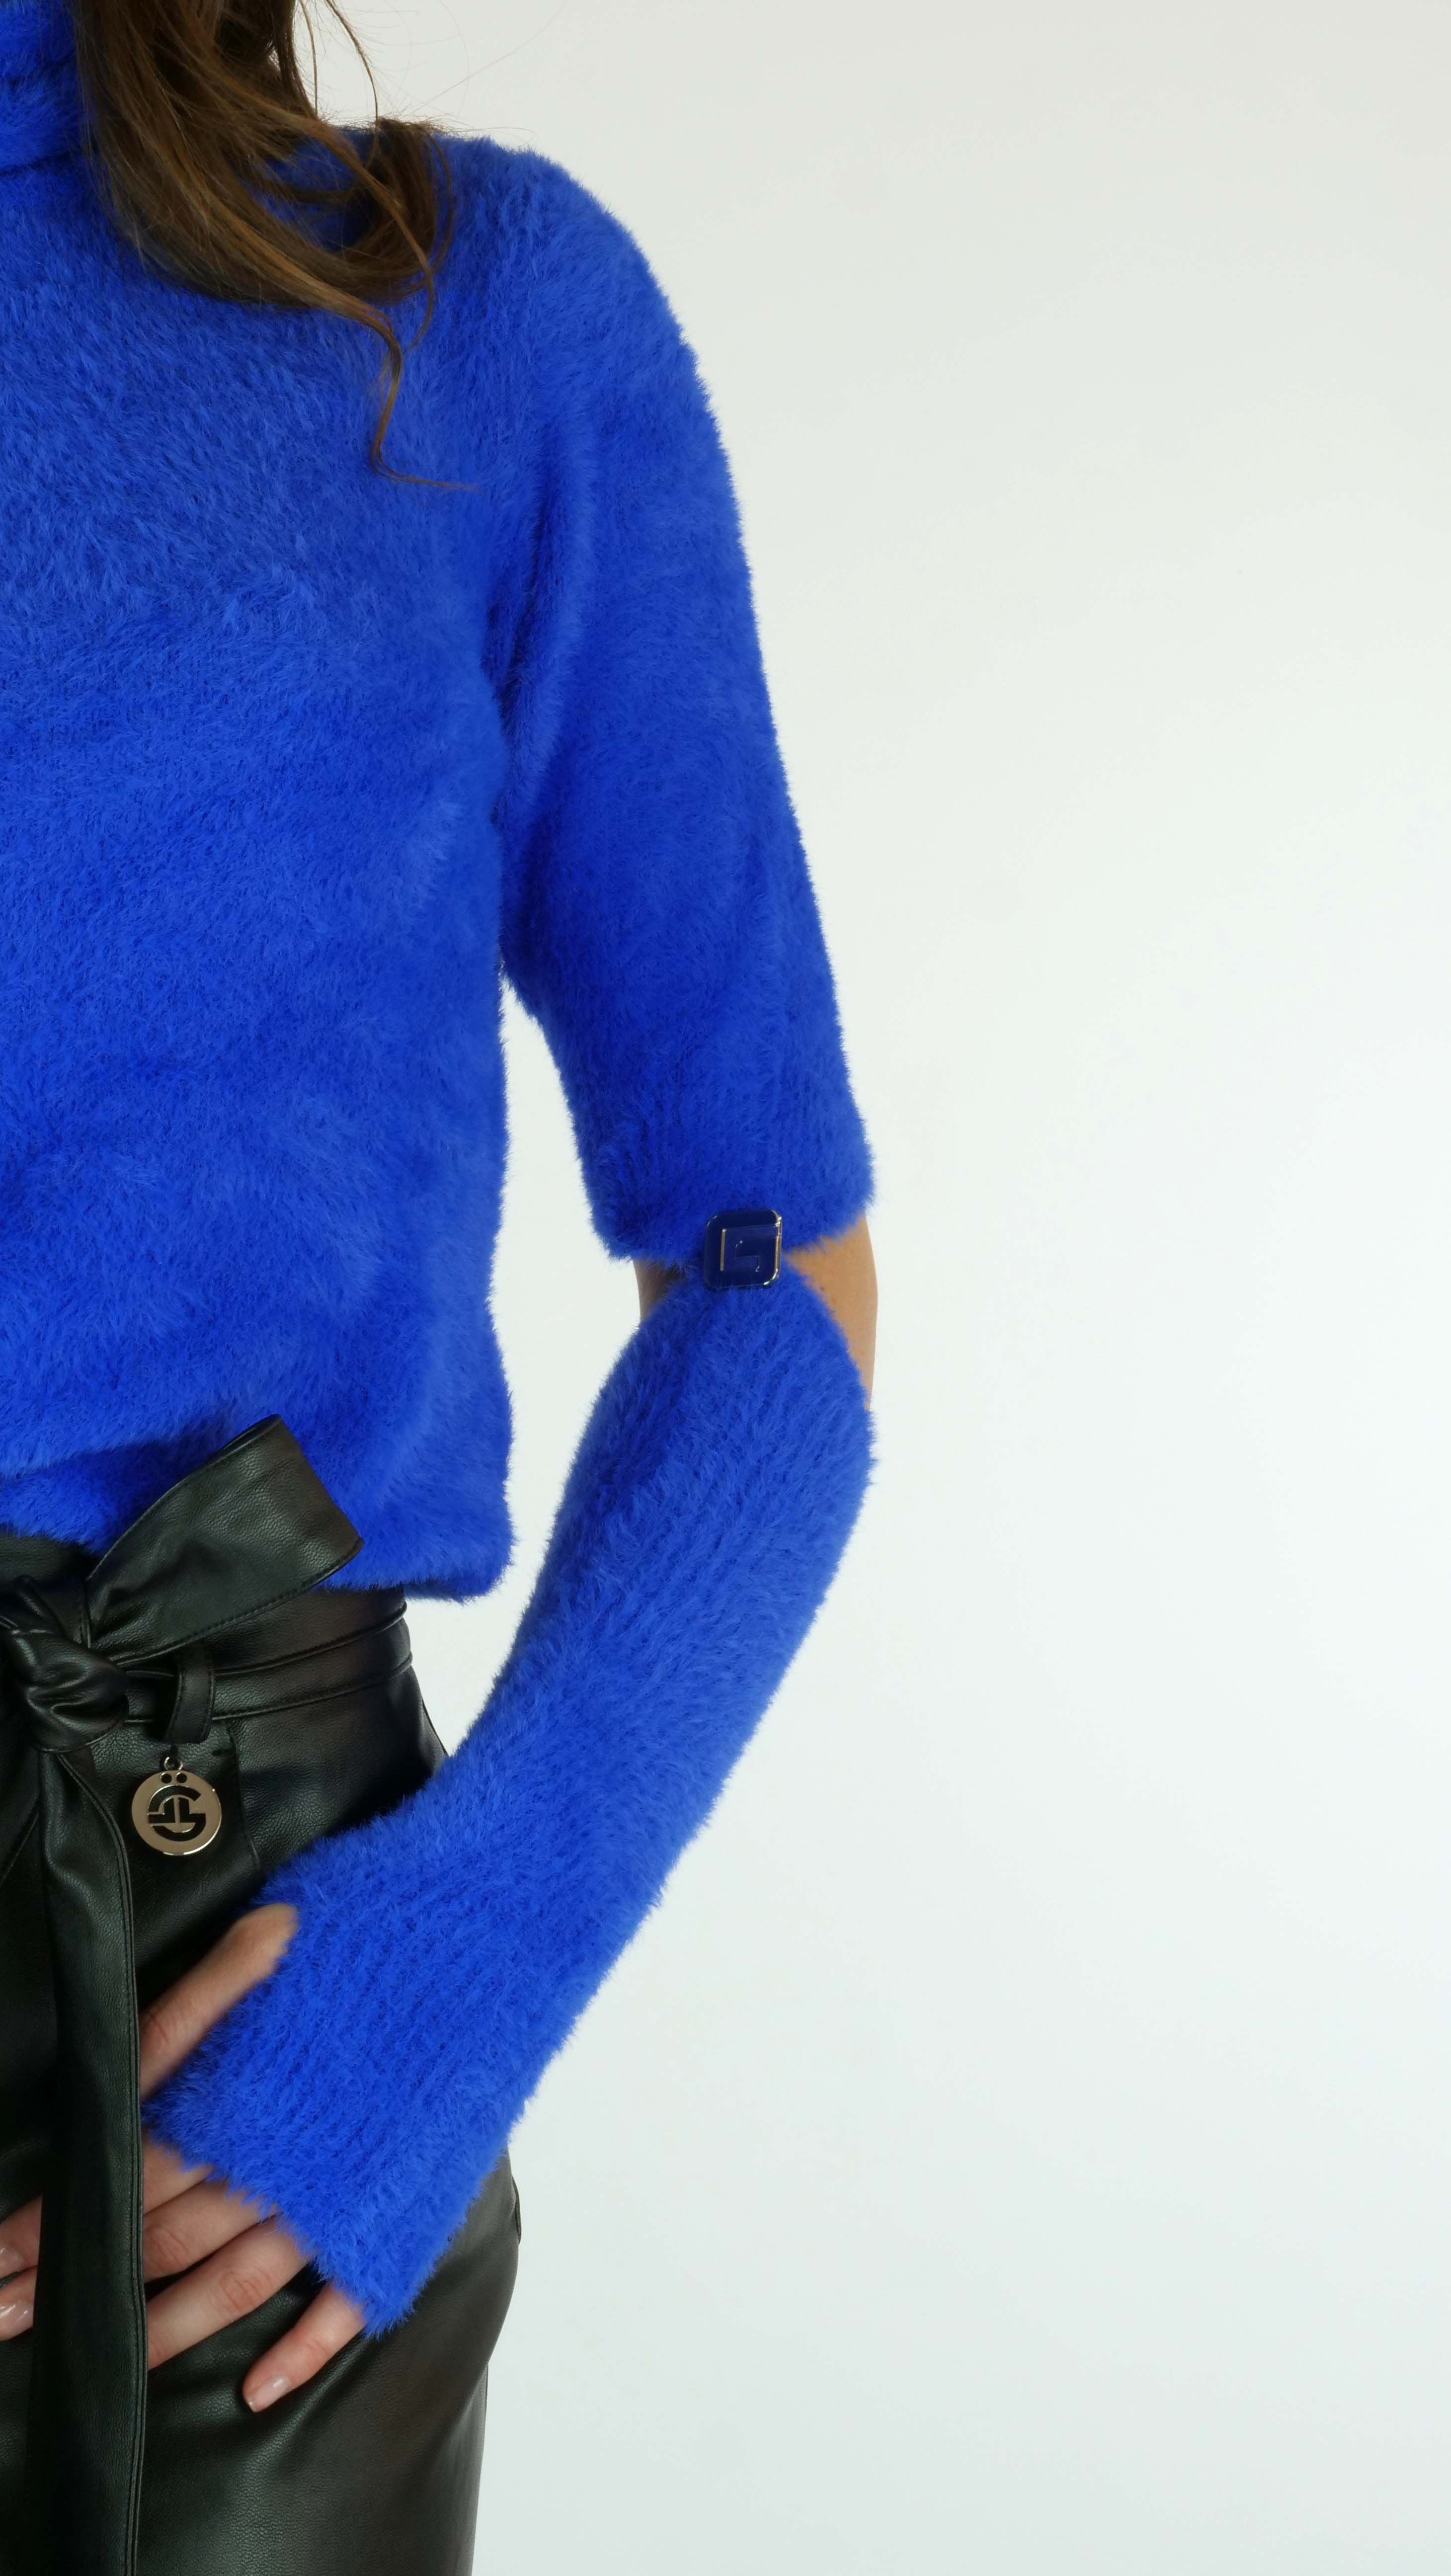 Pull manica corta e guanti GAELLE PARIS GBDP19551 - Bluette